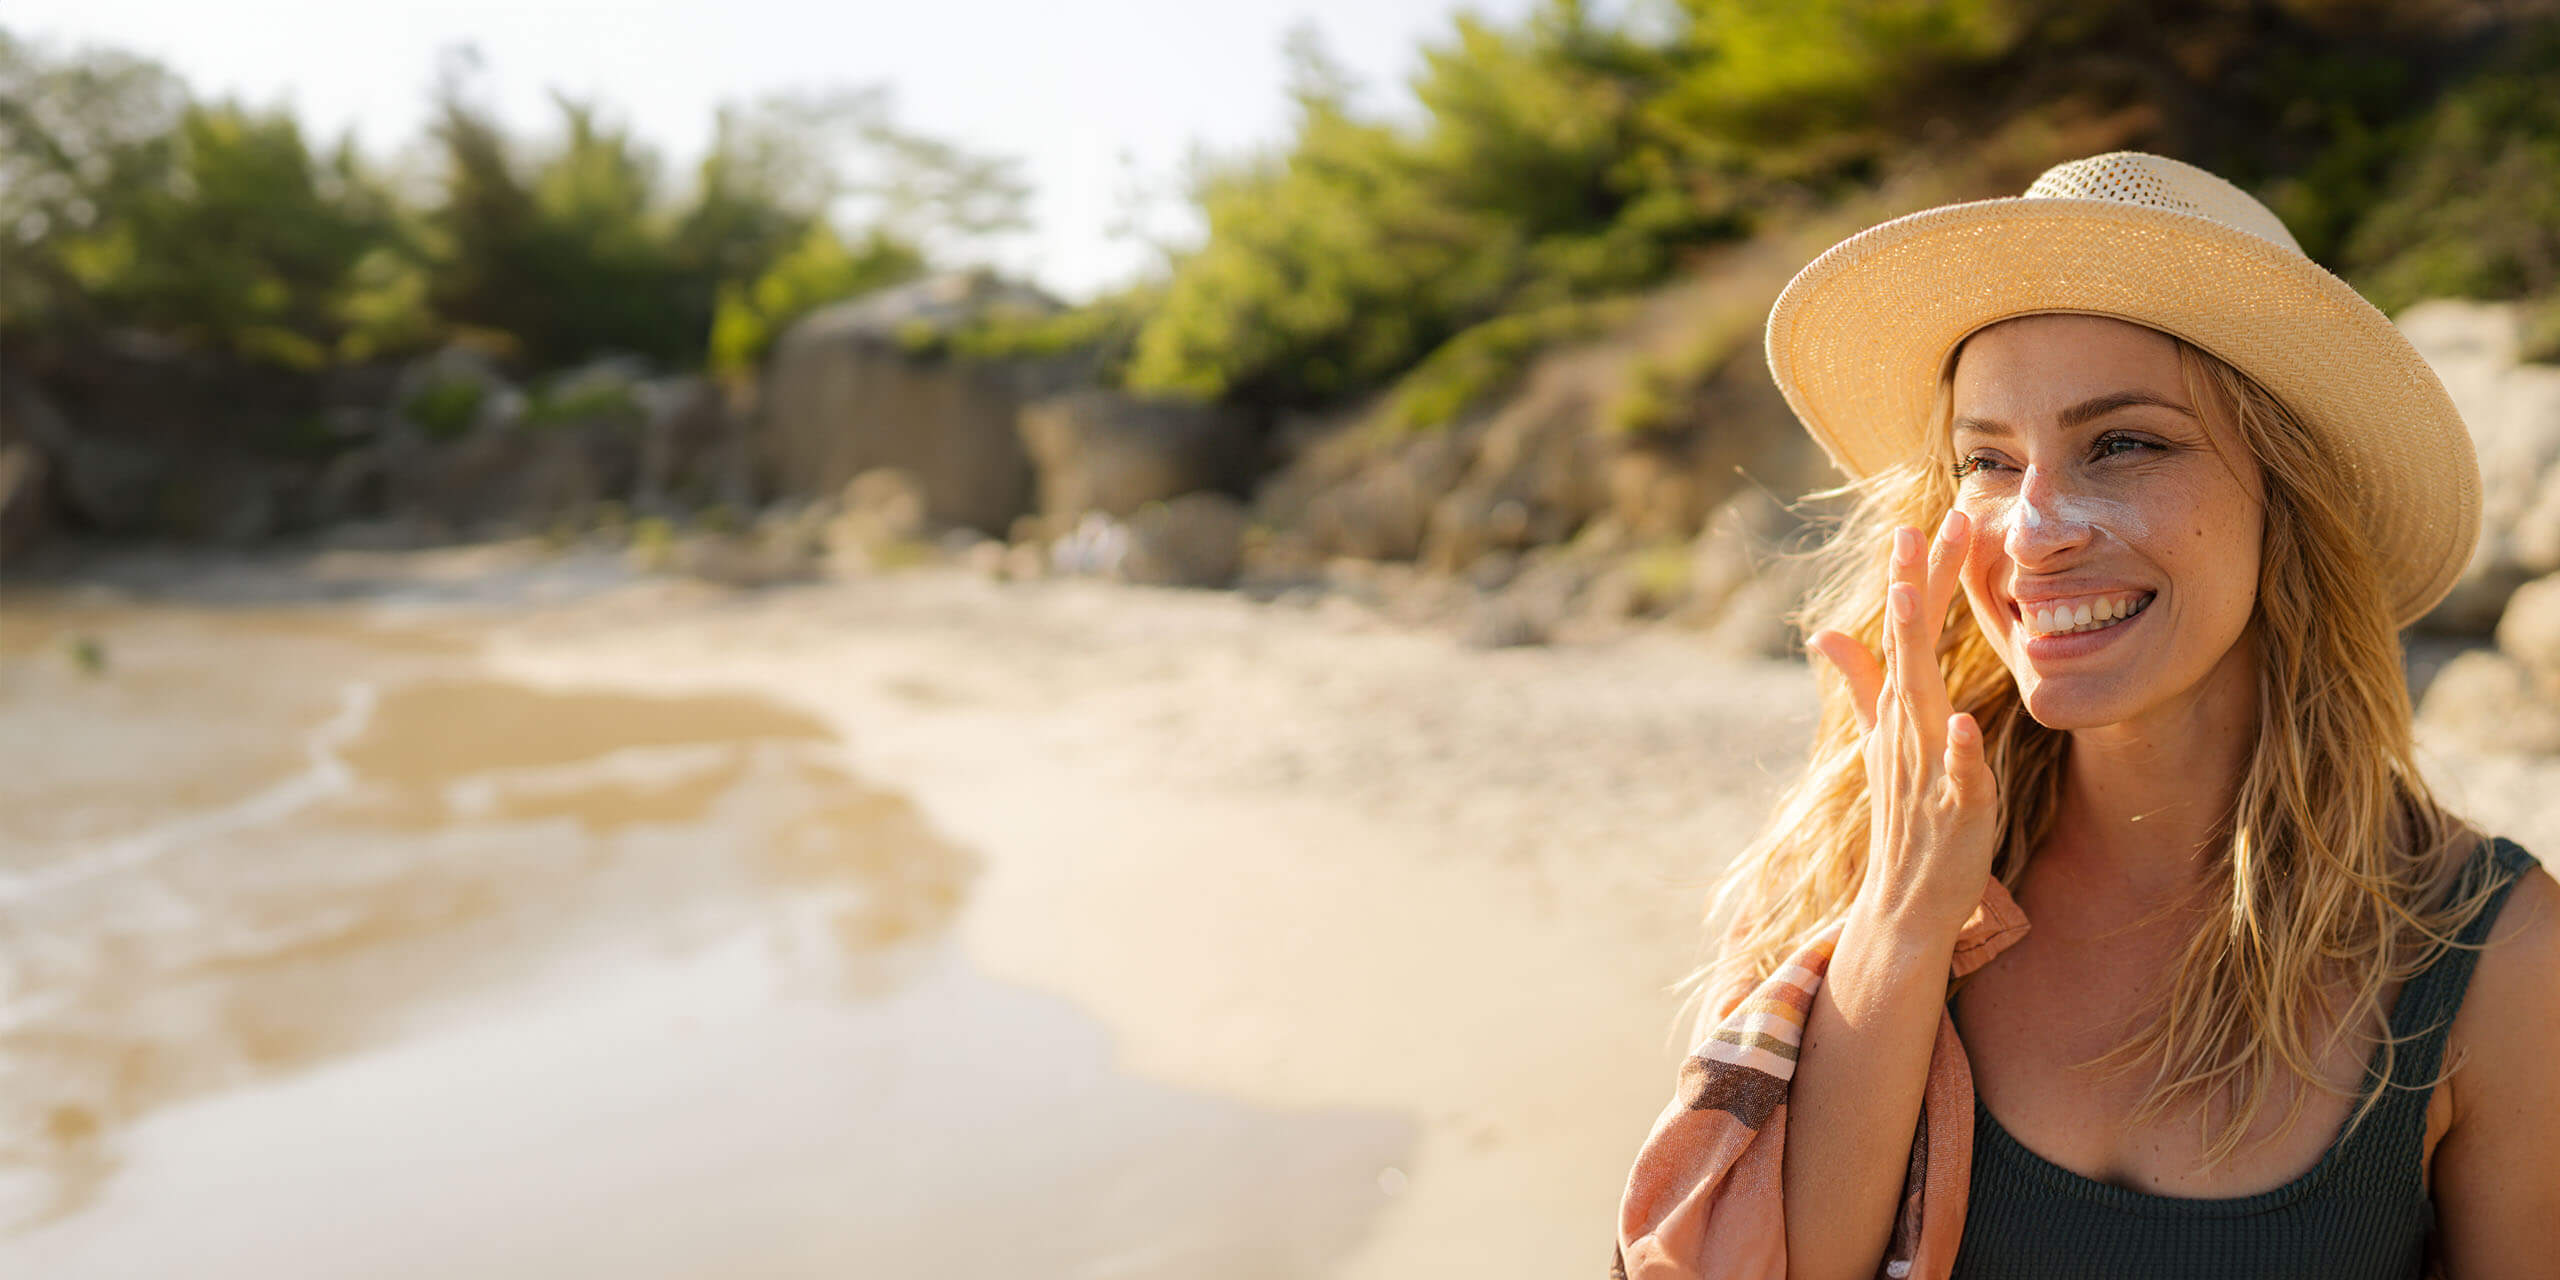 Eine Frau an einem sonnigen Strand trägt Sonnencreme auf ihre Nase auf. Sie trägt einen Strohhut, ein dunkles Tanktop und hat ein Handtuch über der Schulter. Im Hintergrund sind Sand, Felsen und Grün zu sehen. Sie lächelt und schaut zur Seite.